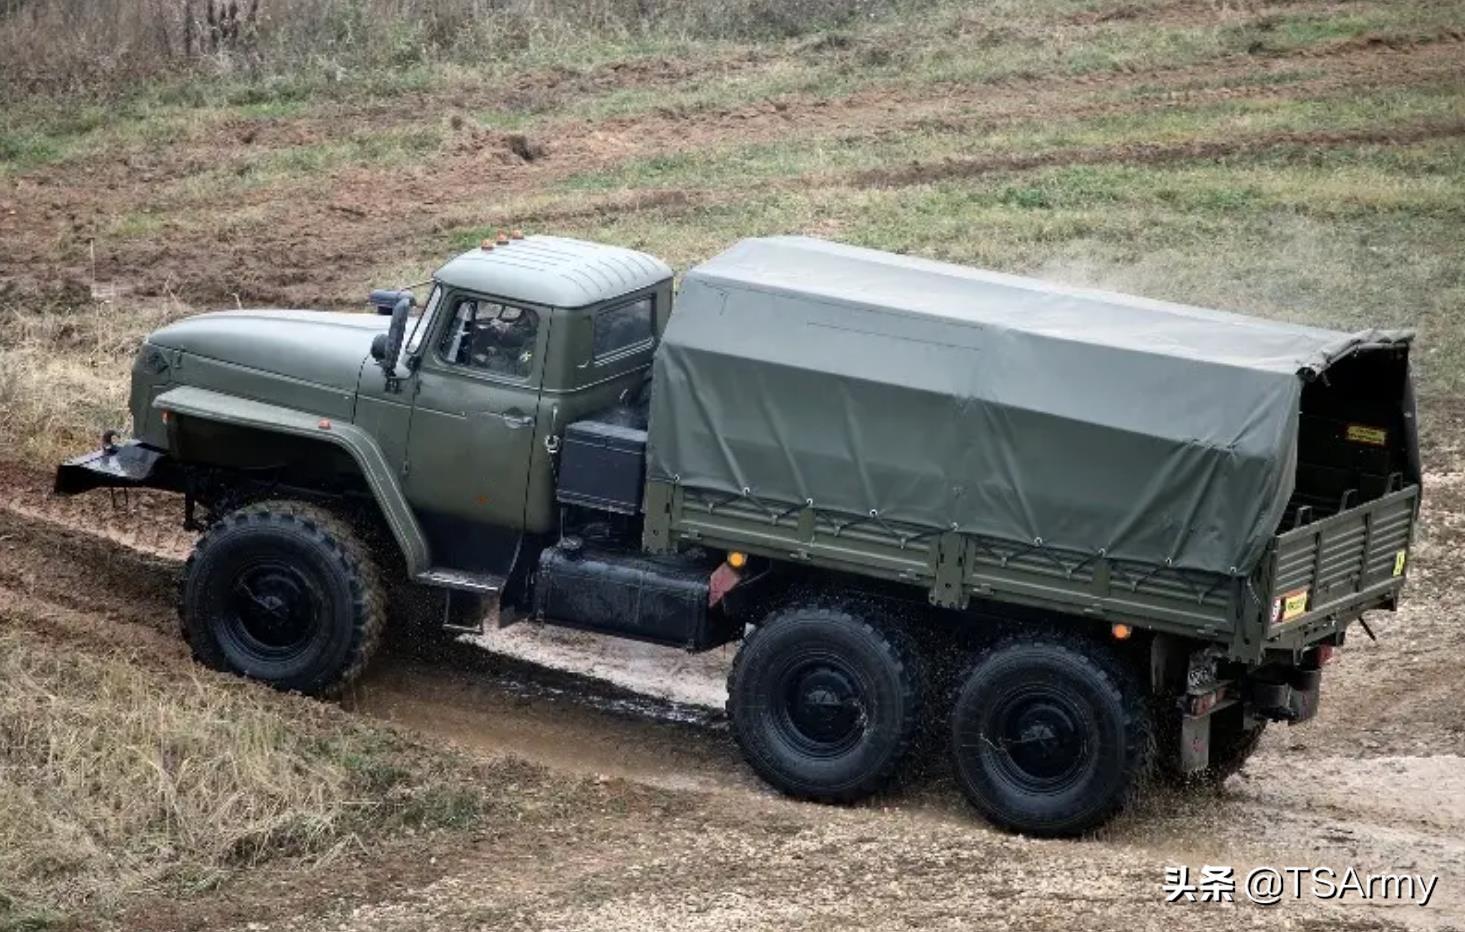 俄罗斯14大现役军用车辆总览,都带着粗犷的外形